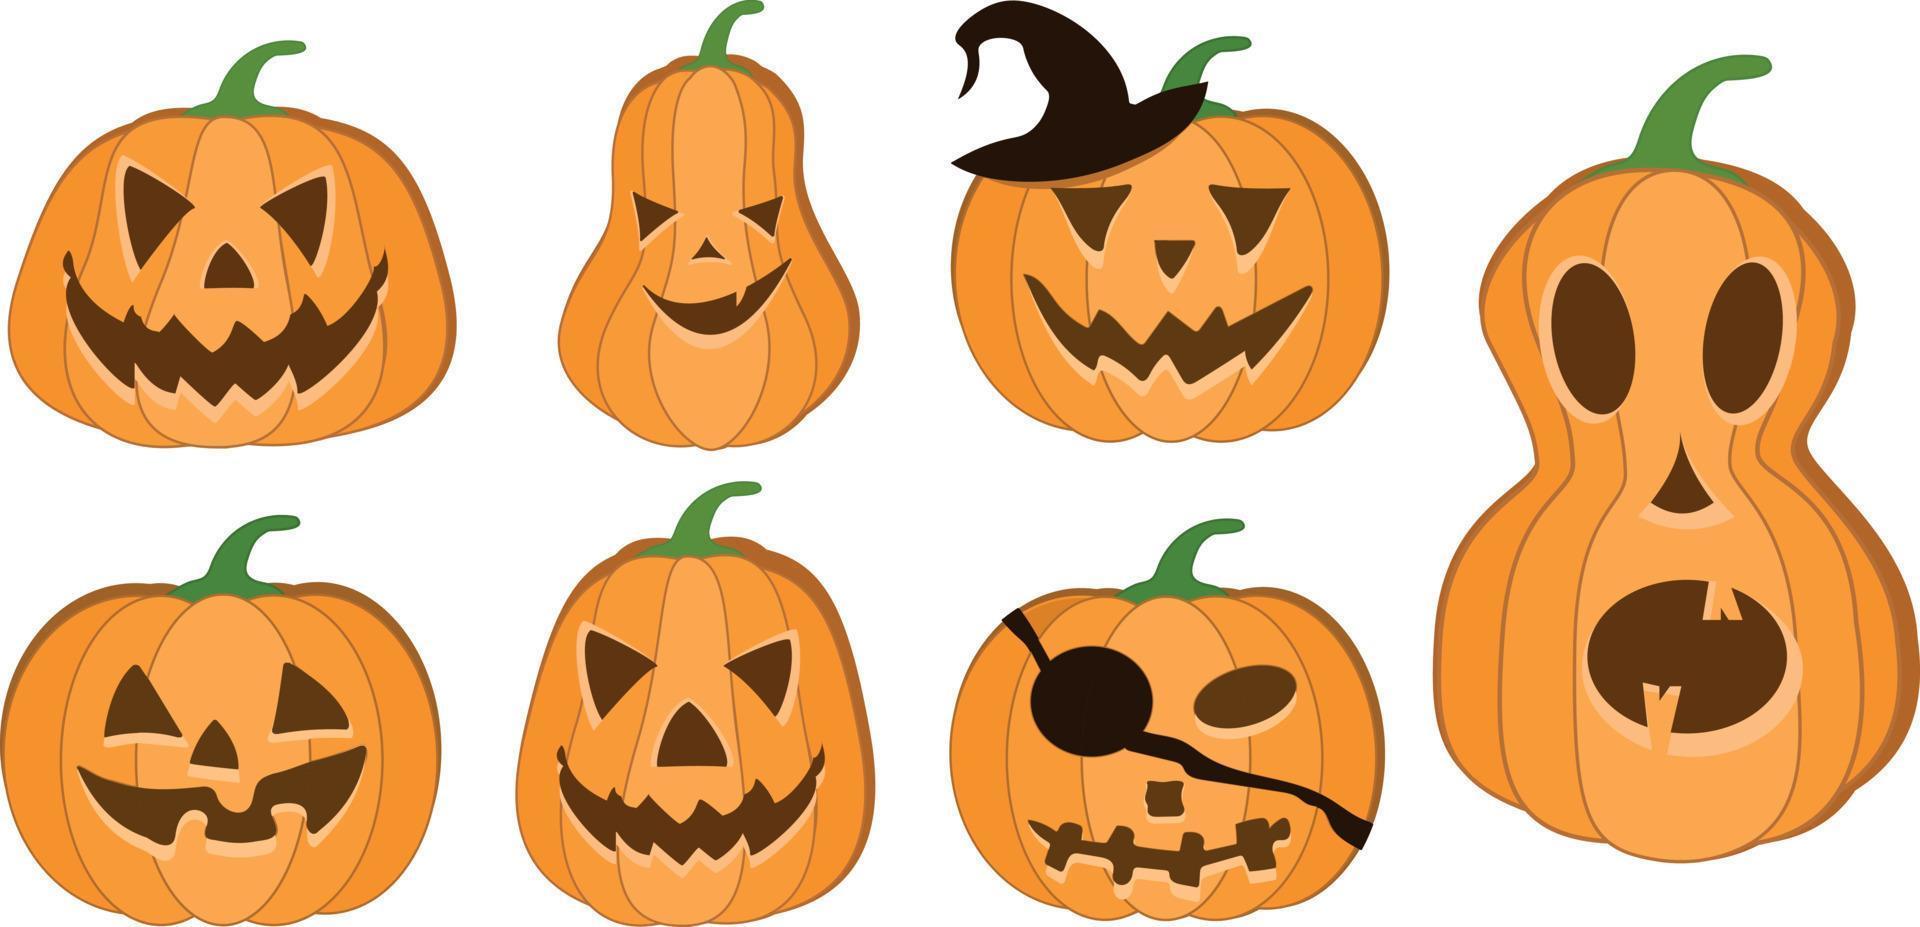 halloween pompoen vector 7 pictogrammen set, emotie variatie. gemakkelijk vlak stijl ontwerp elementen. reeks van silhouet spookachtig verschrikking afbeeldingen van pompoenen. eng jack-o-lantern gelaats uitdrukkingen illustratie.